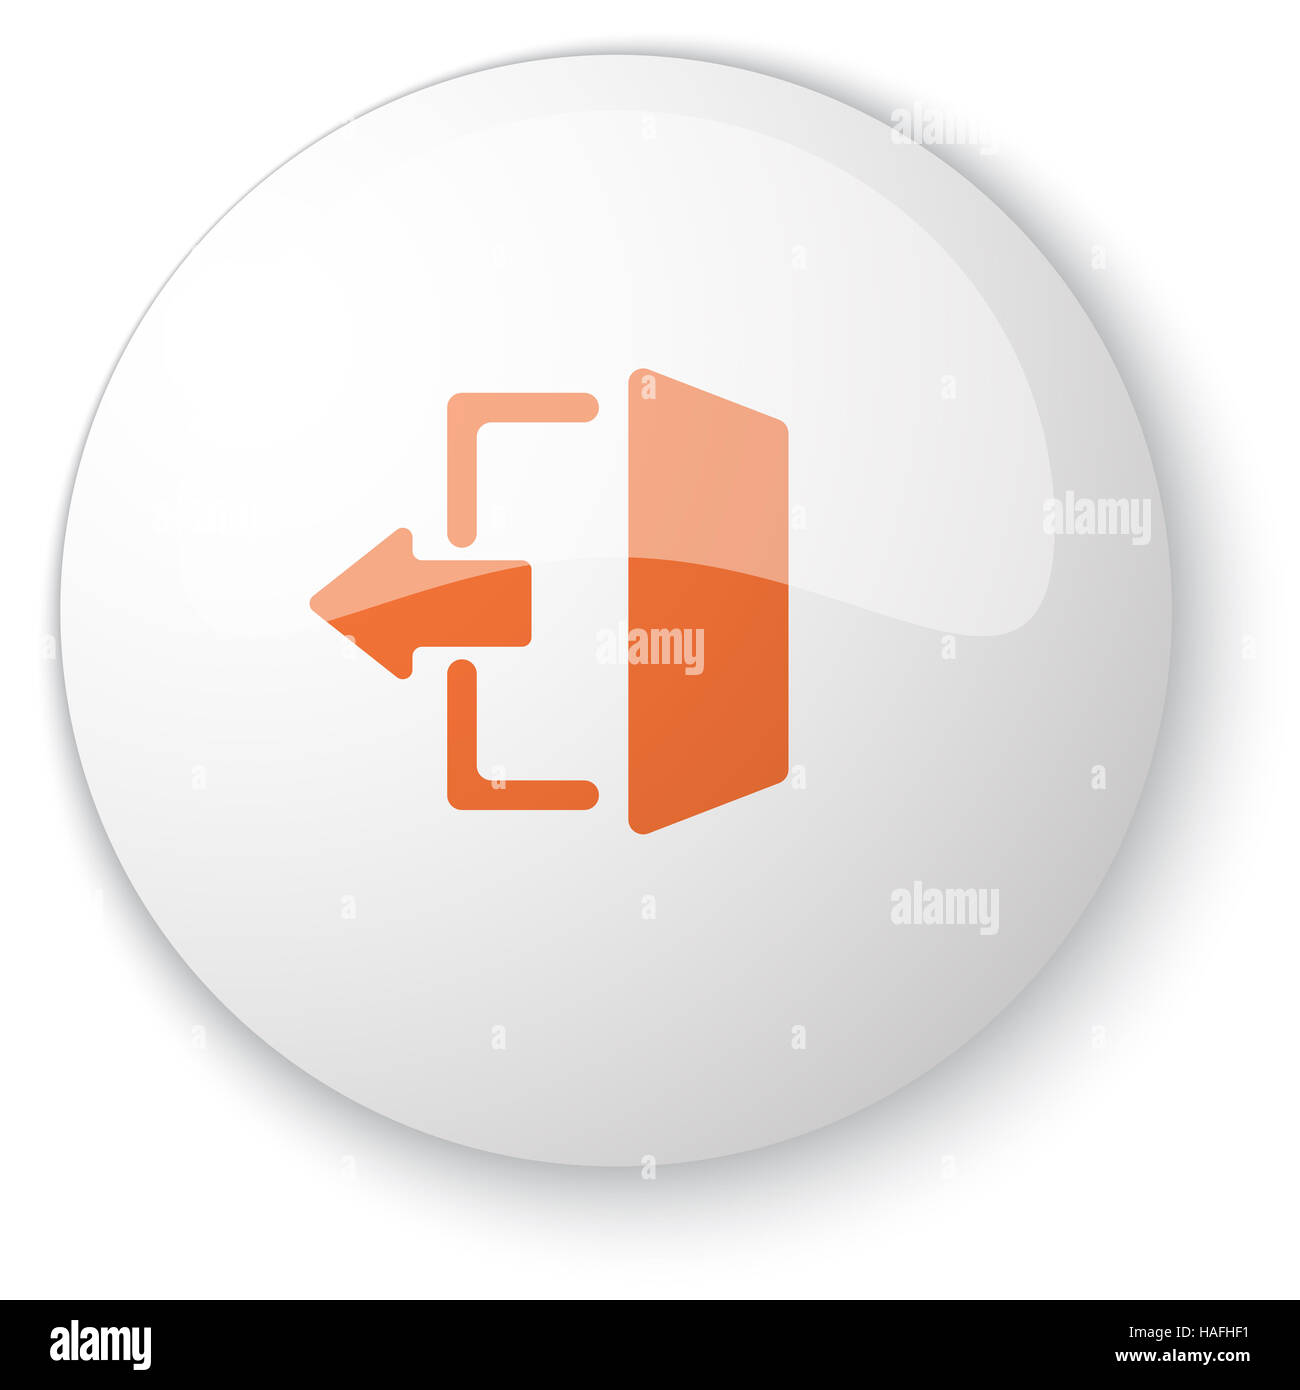 Blanc brillant avec bouton web icône quitter orange sur fond blanc Banque D'Images